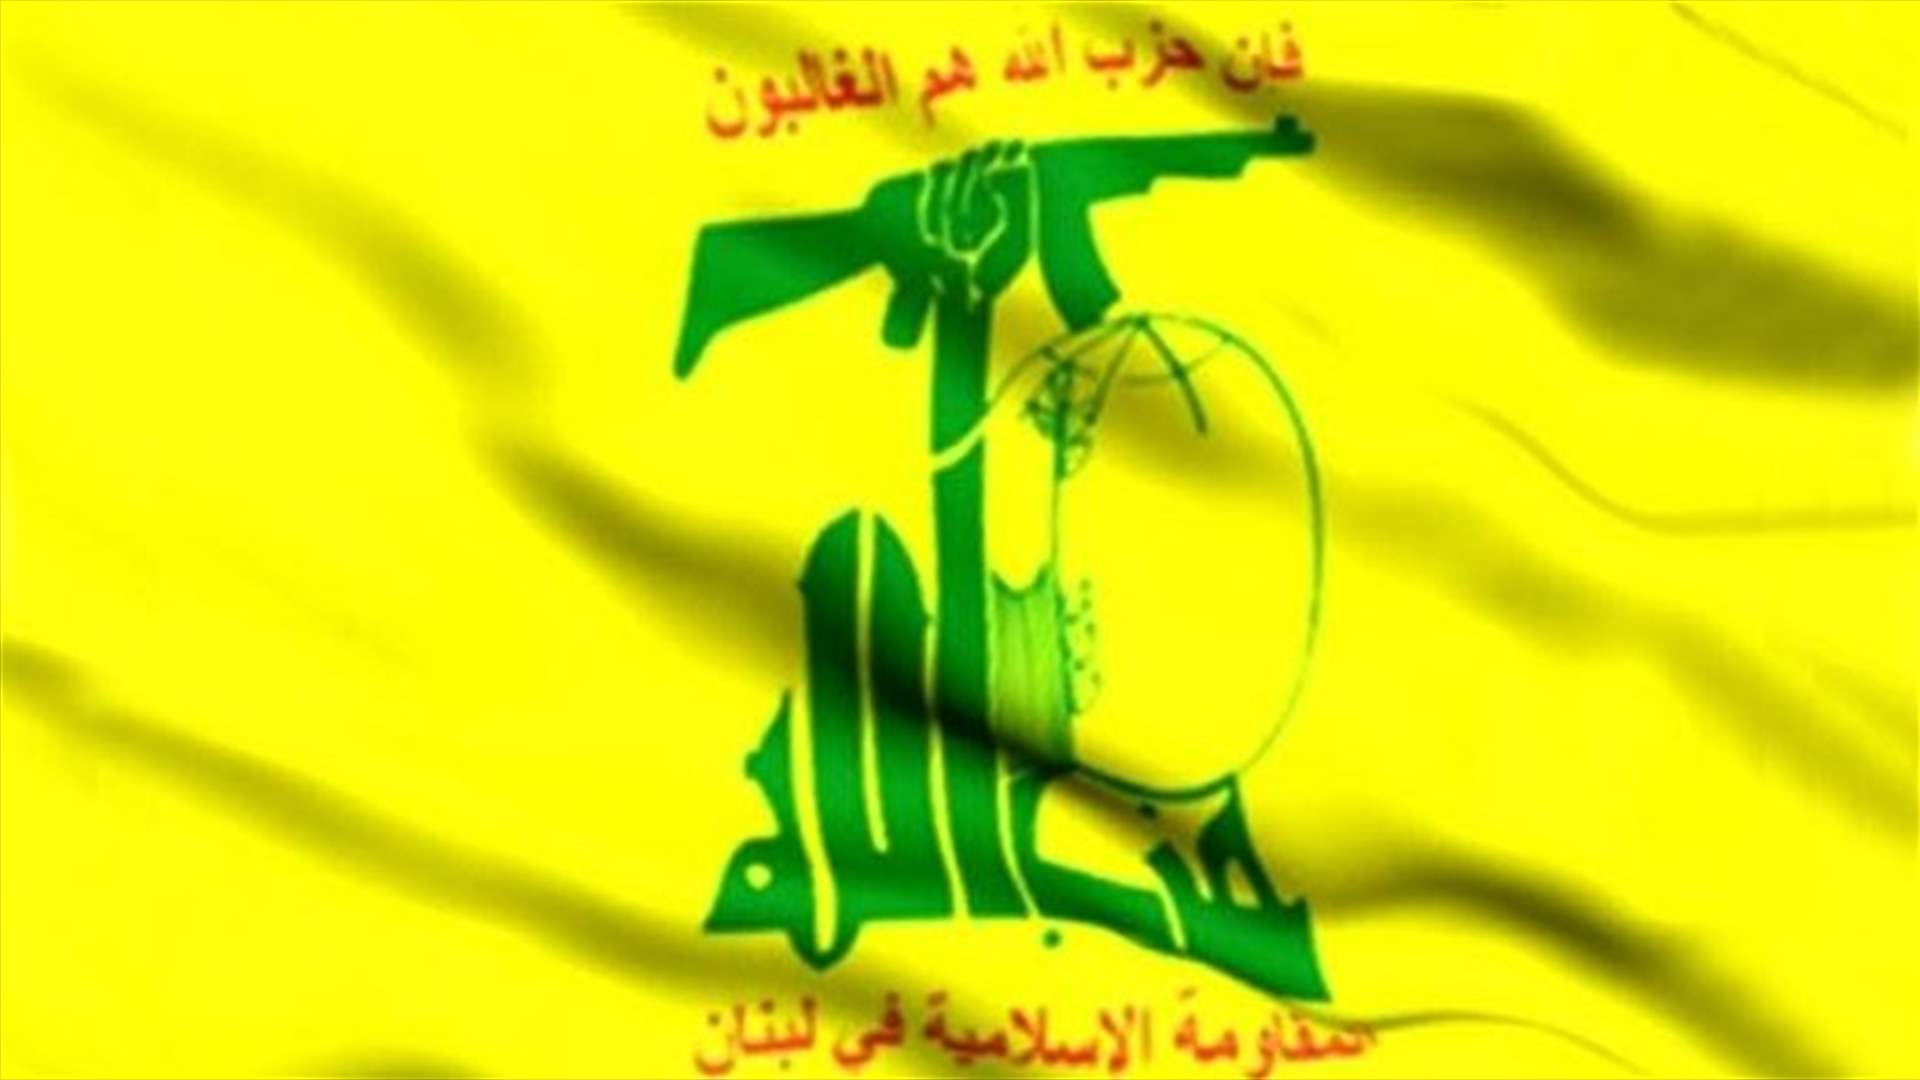 &quot;الجمهورية&quot; : وزراء حزب الله سيطرحون في جلسة الحكومة غدا موقف لبنان بالقمّة العربية